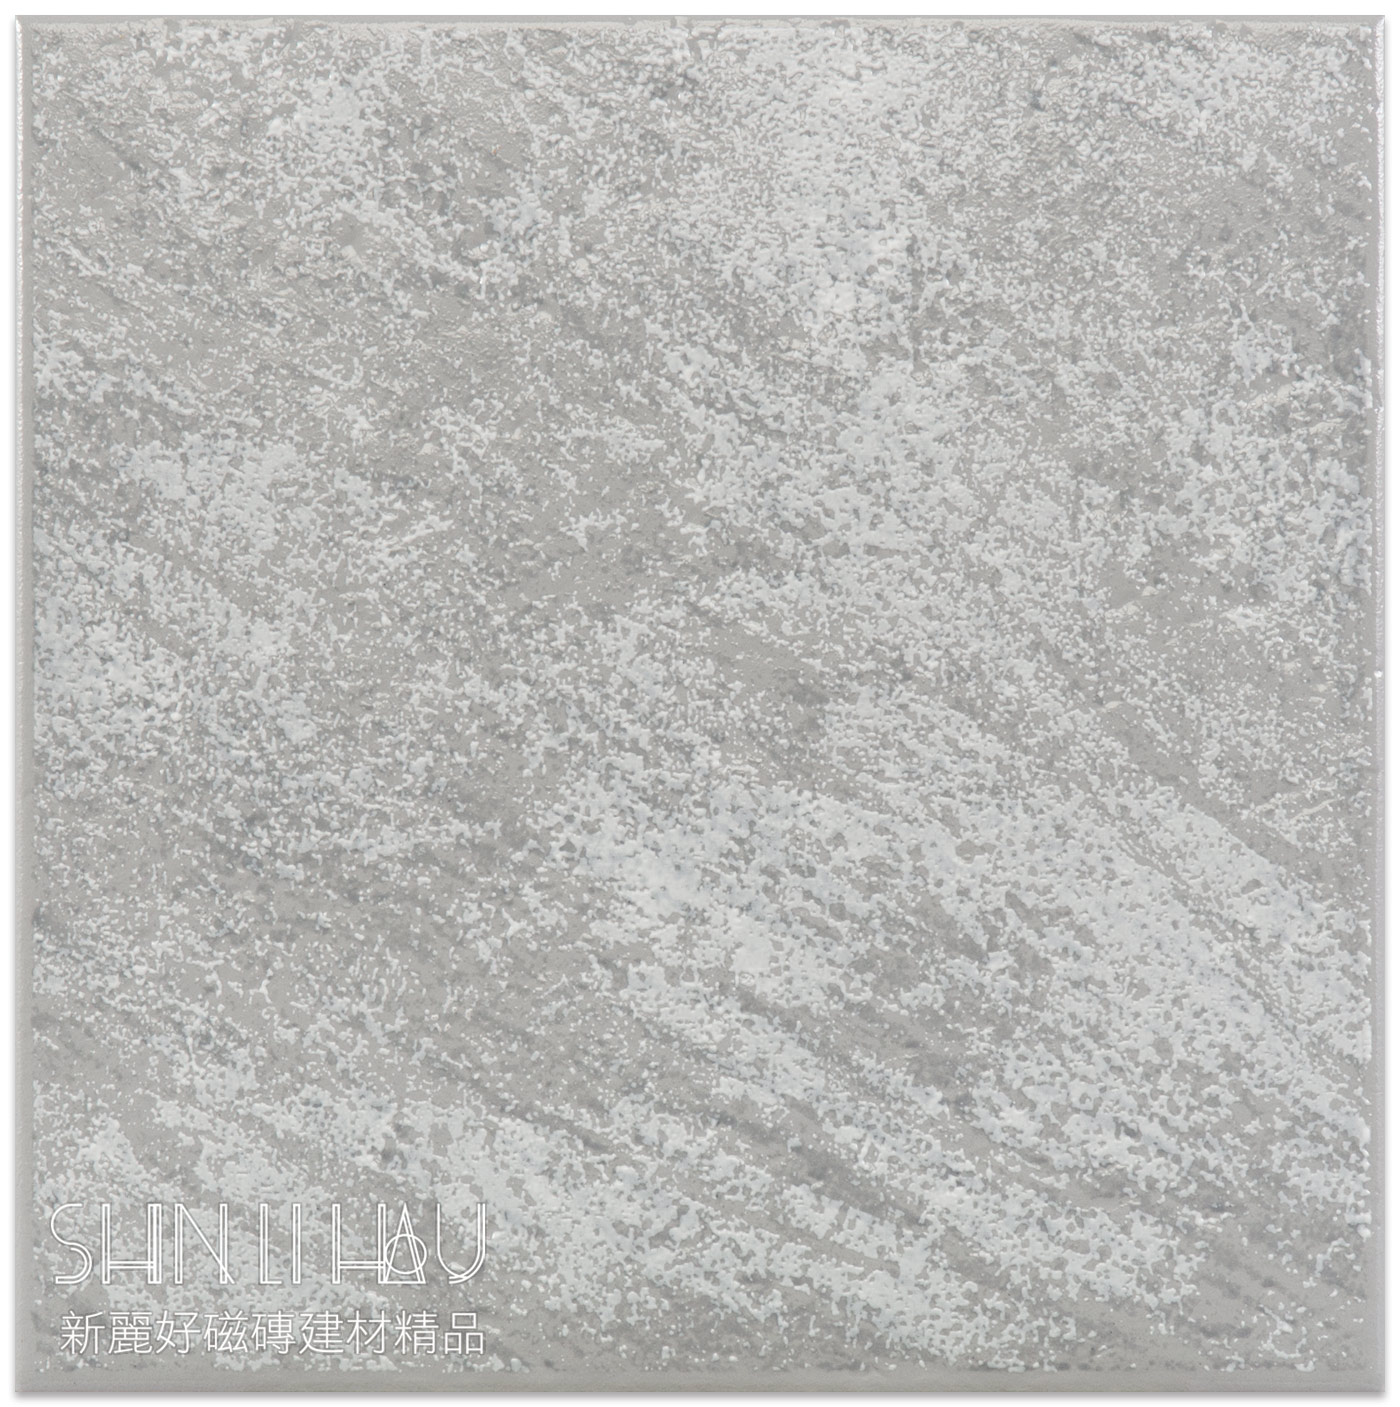 歐洲磁磚特價-凡蒂尼復古磚 每坪2835元義大利進口地壁磚 - 灰白色